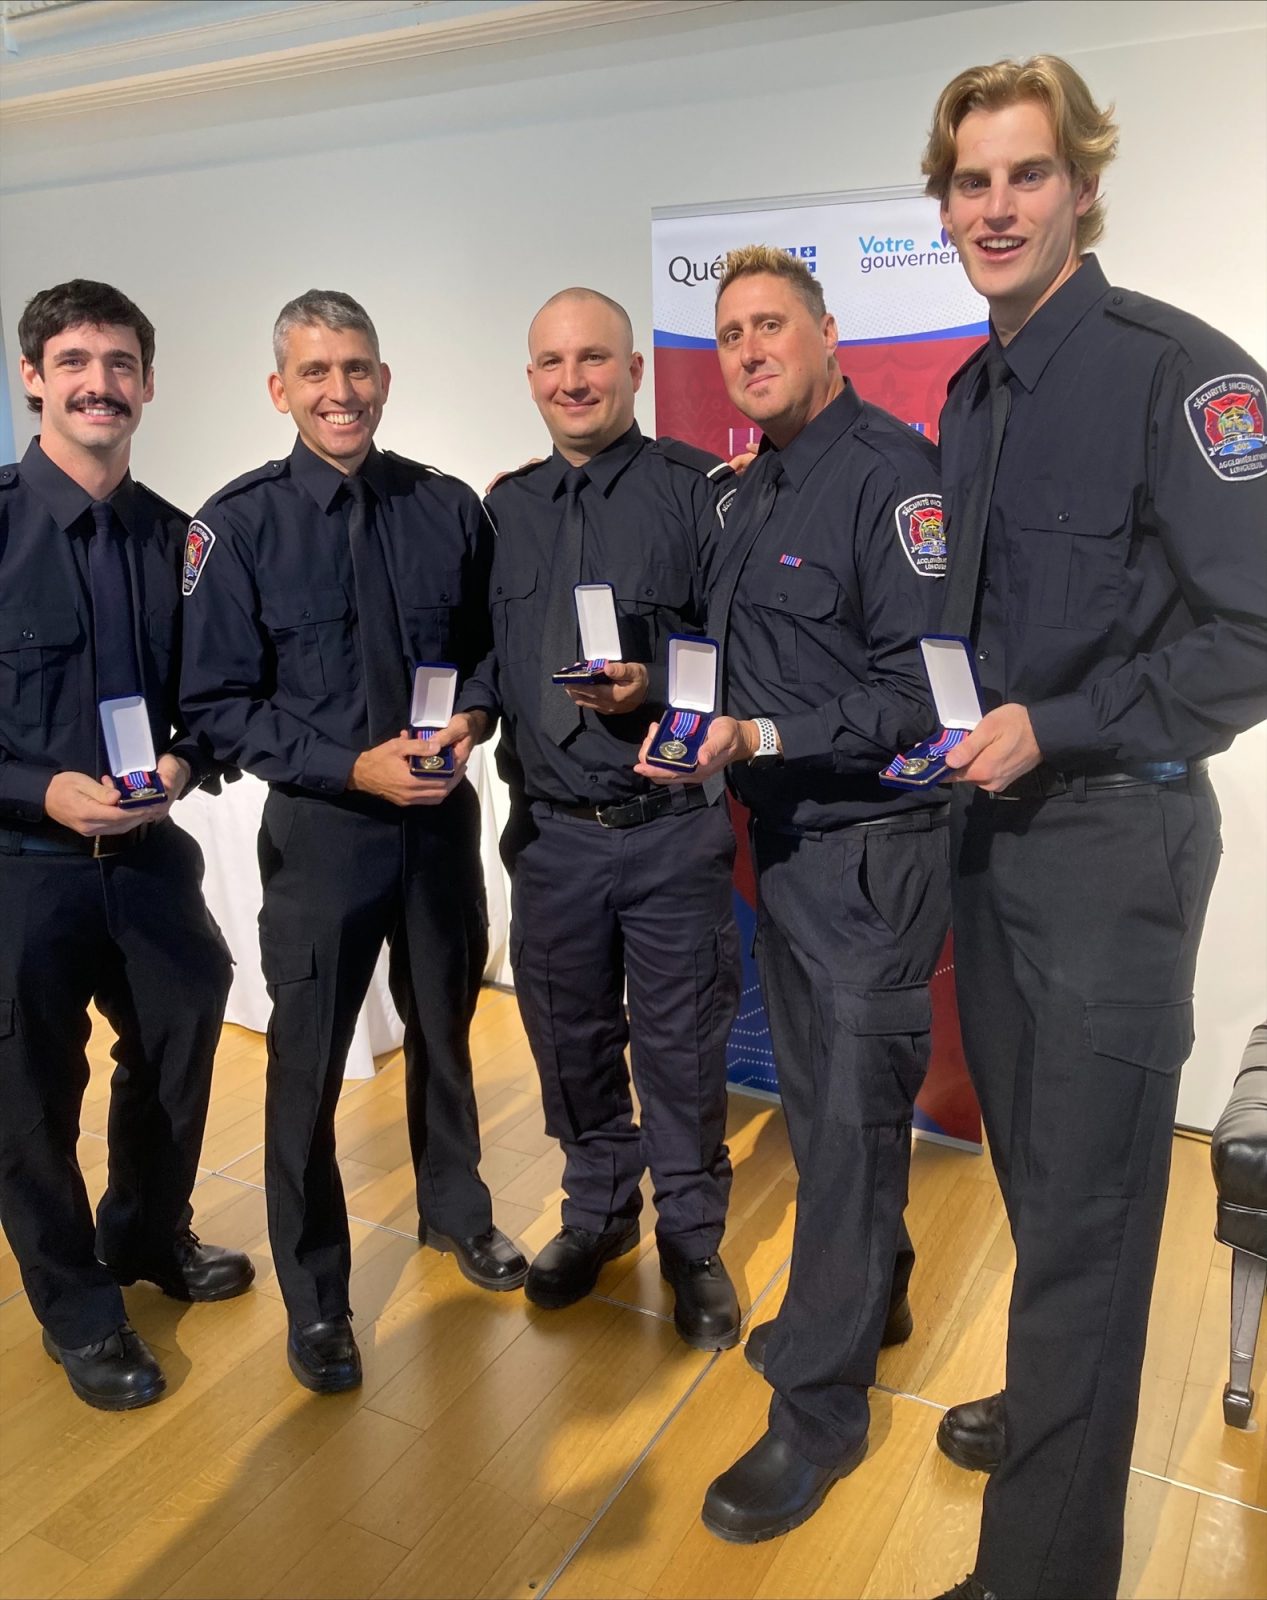 Cinq pompiers de l’agglomération honorés pour avoir sauvé un coéquipier